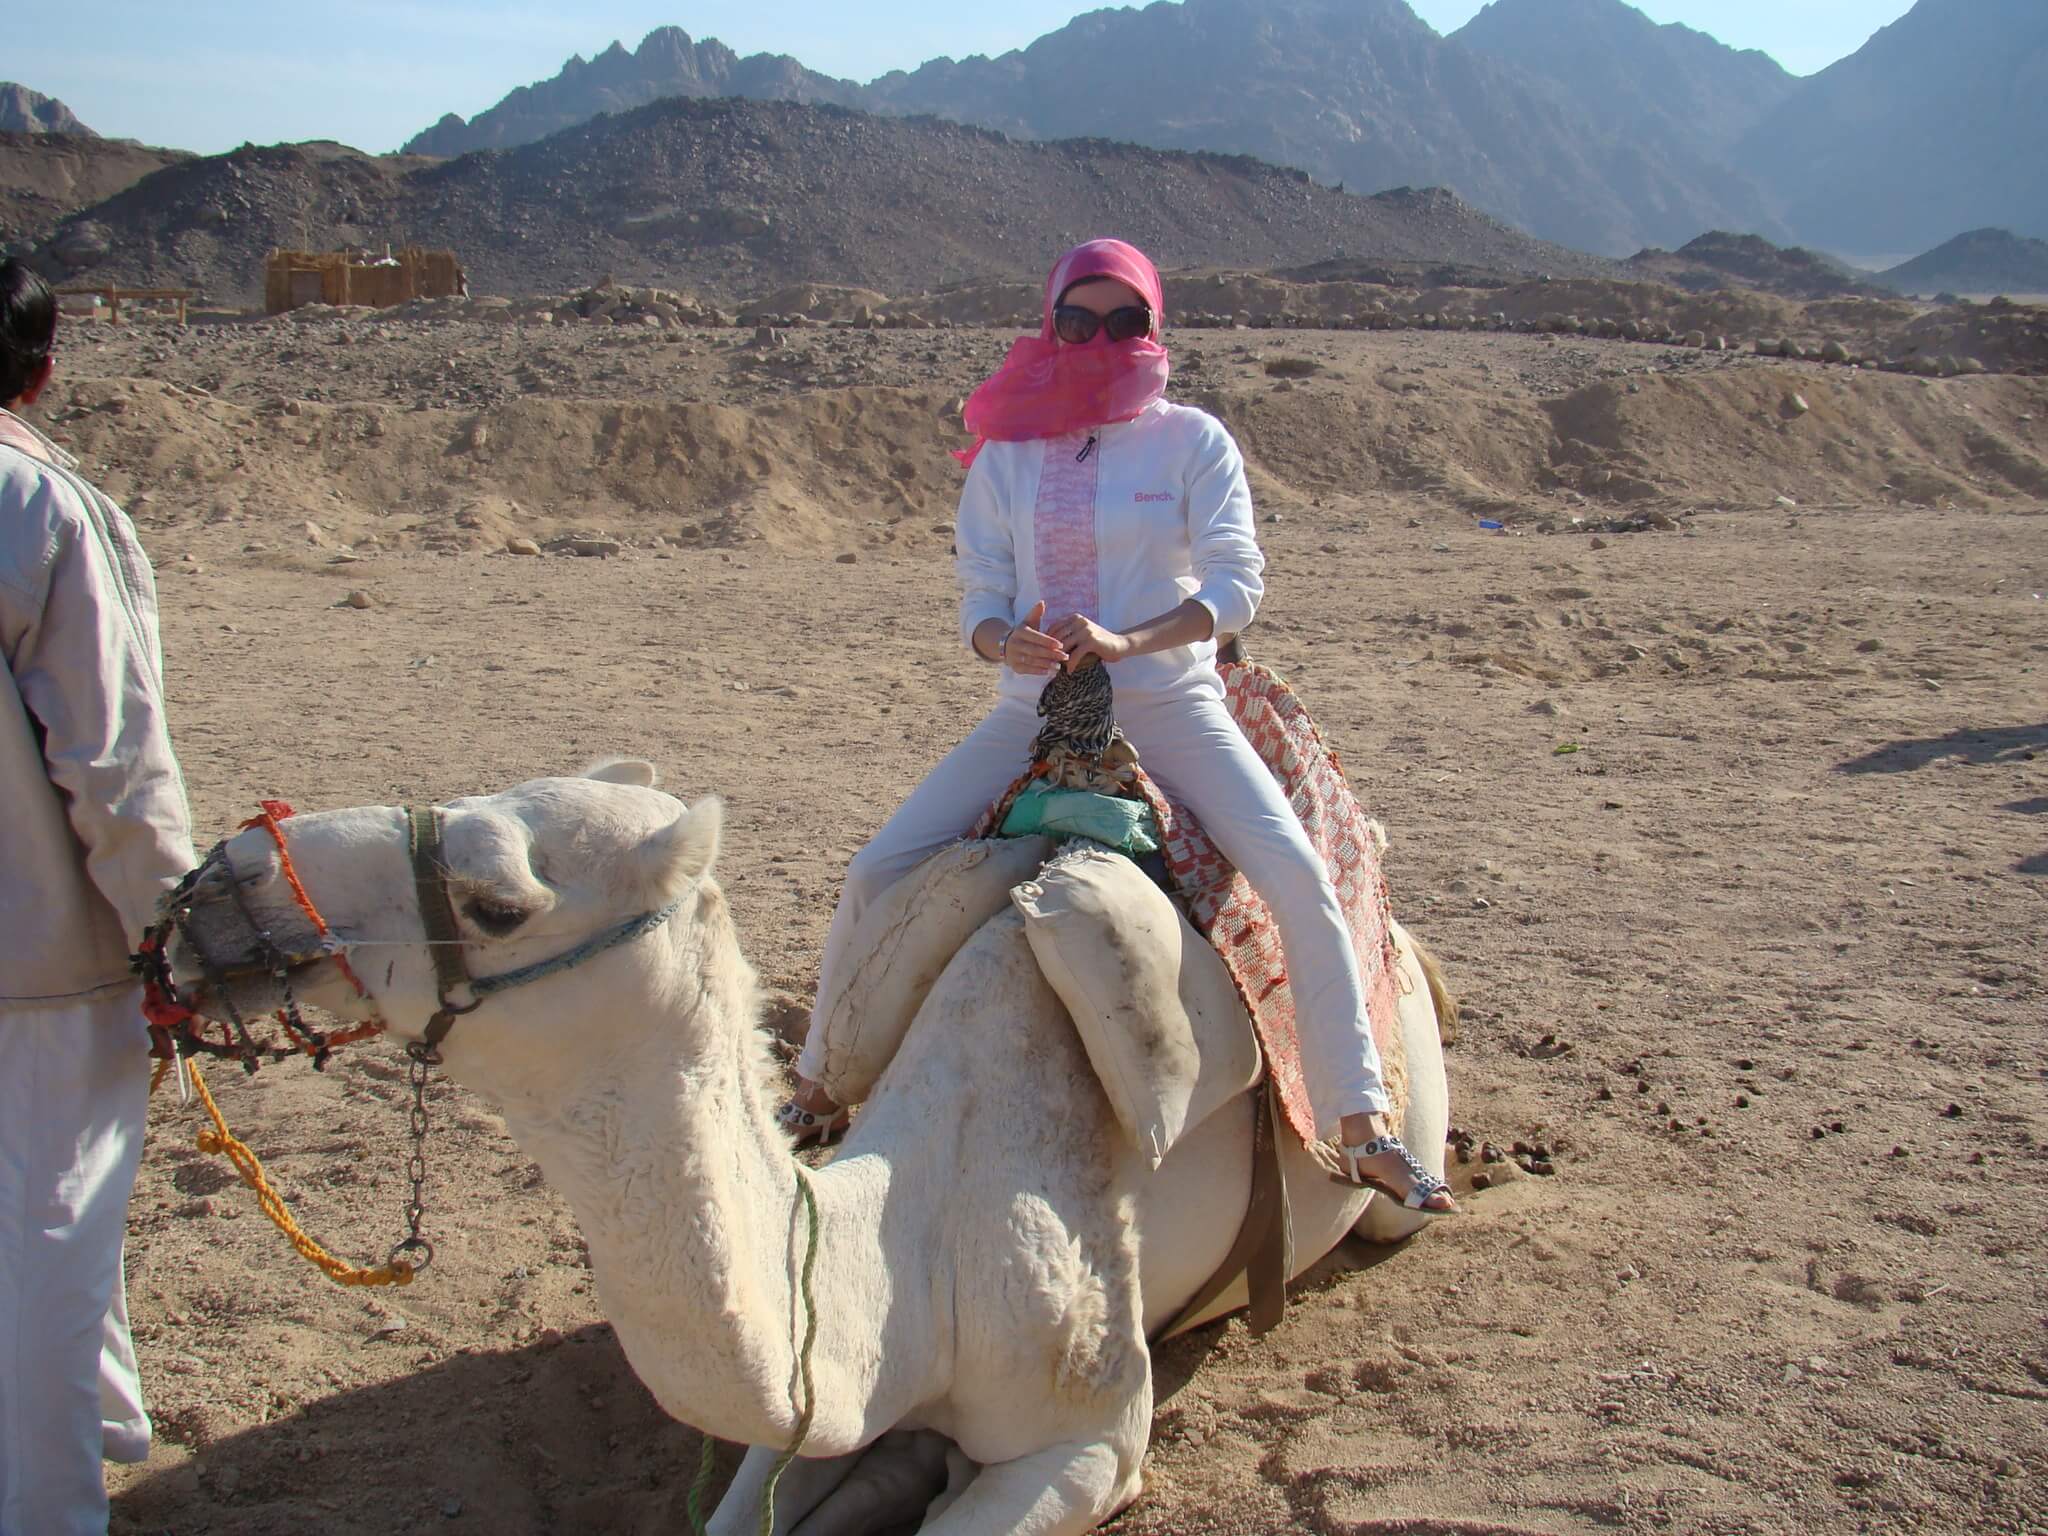 A Camel Ride in a Desert